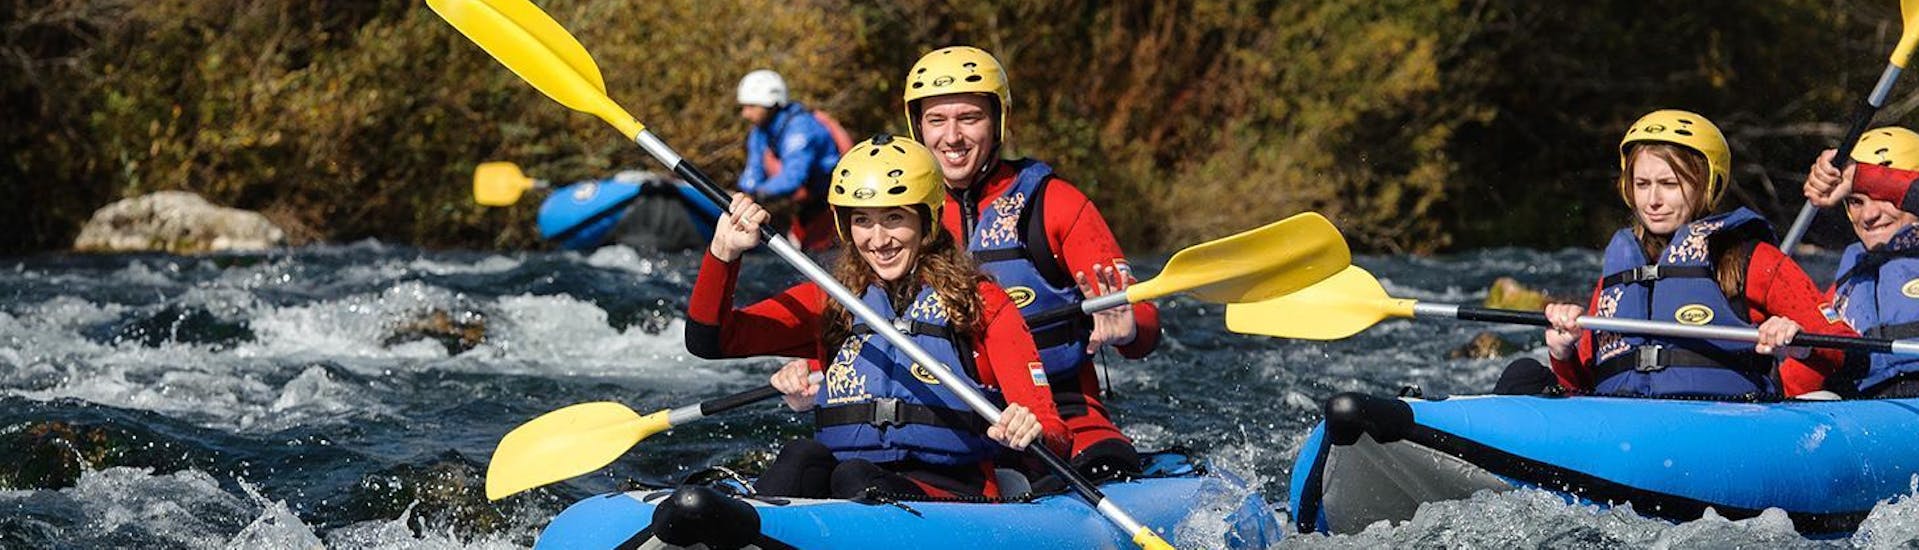 De deelnemers aan de kanosafari op de rivier de Cetina met Adventure Dalmatia genieten van hun tijd op de rivier terwijl ze door spetterende stroomversnellingen peddelen.